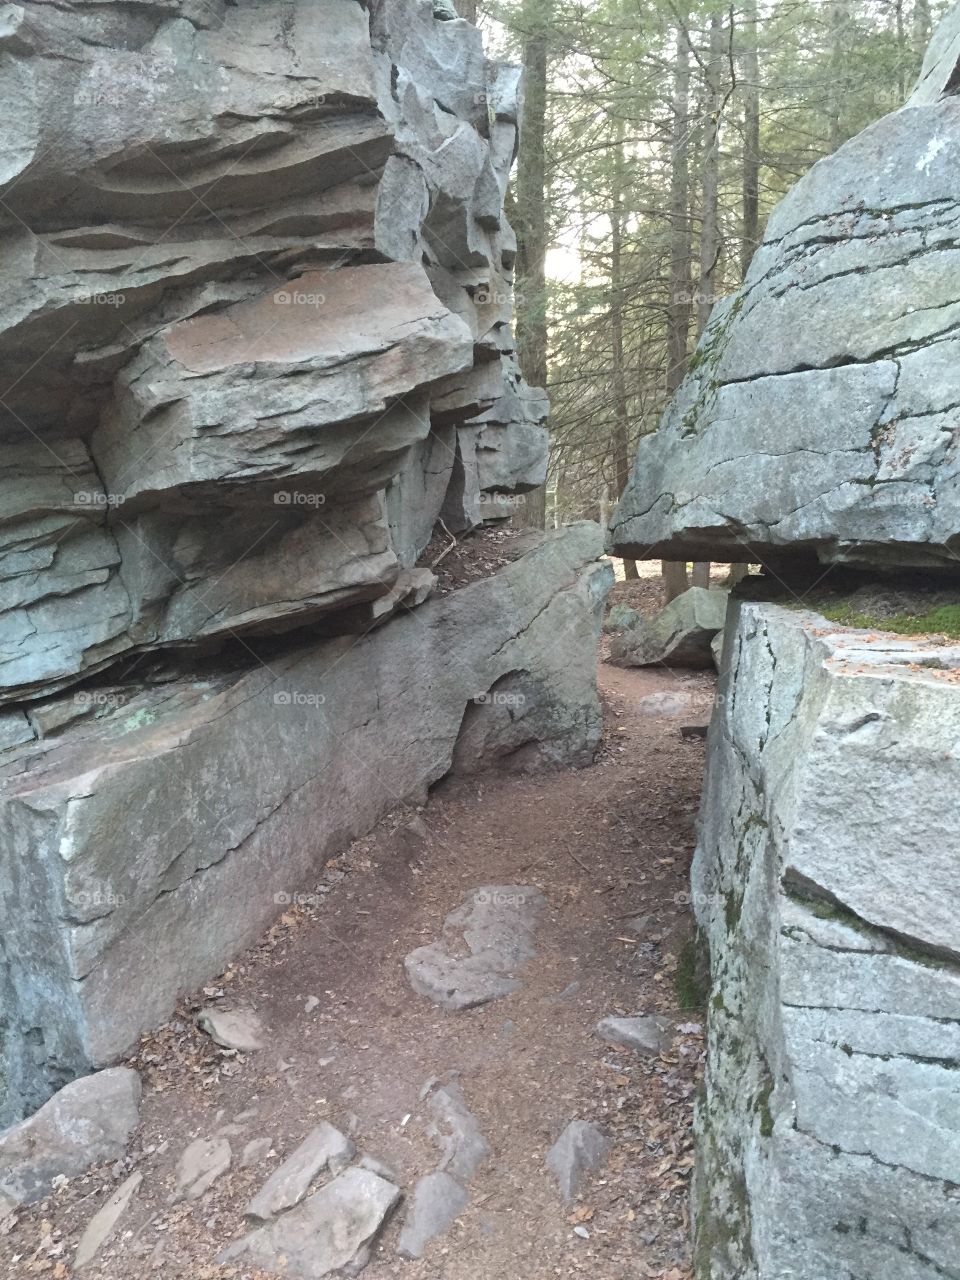 Stoney passage